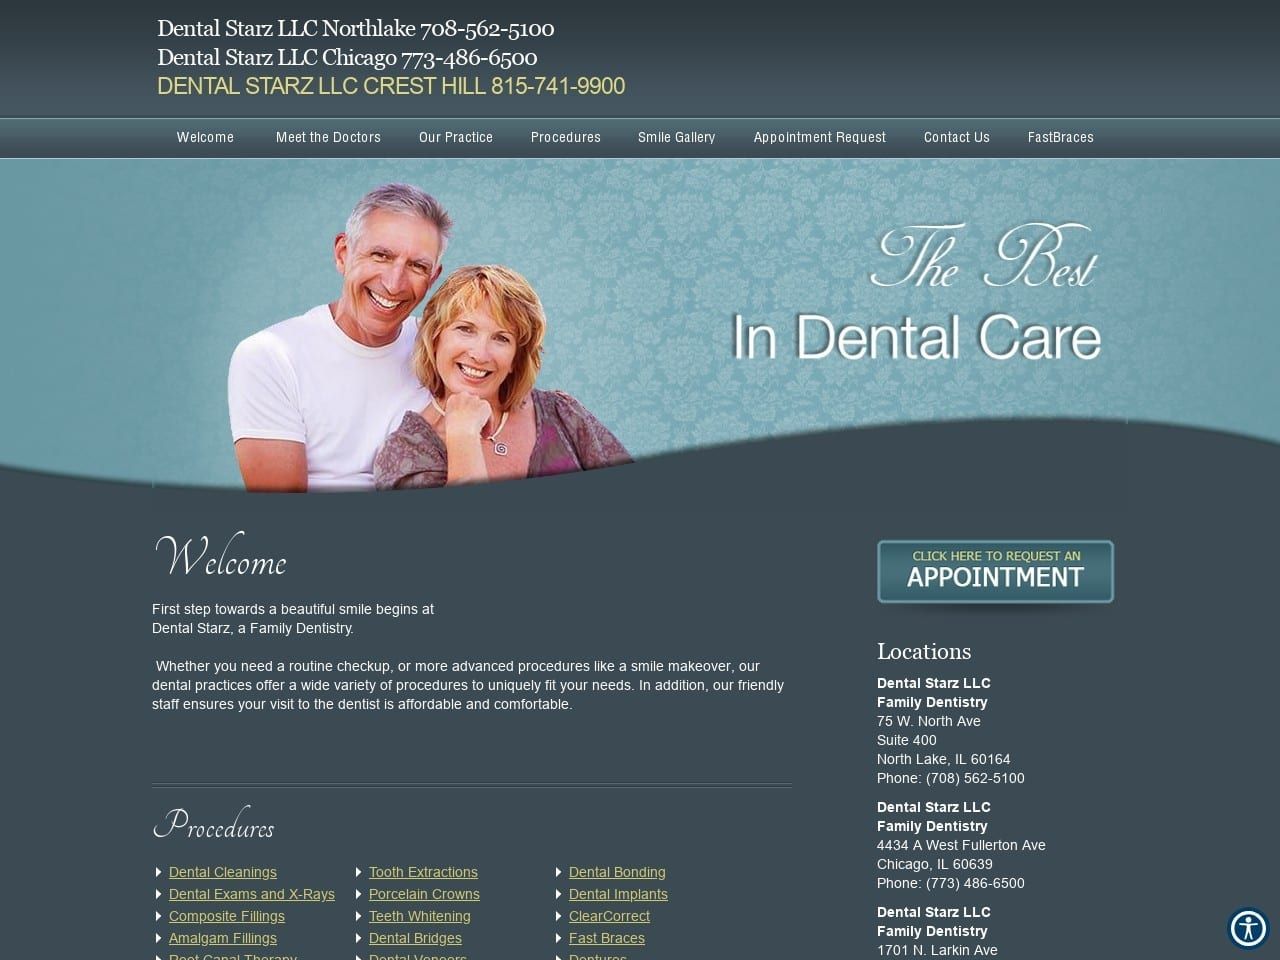 Dental Starz LLC Website Screenshot from dentalstarz.org